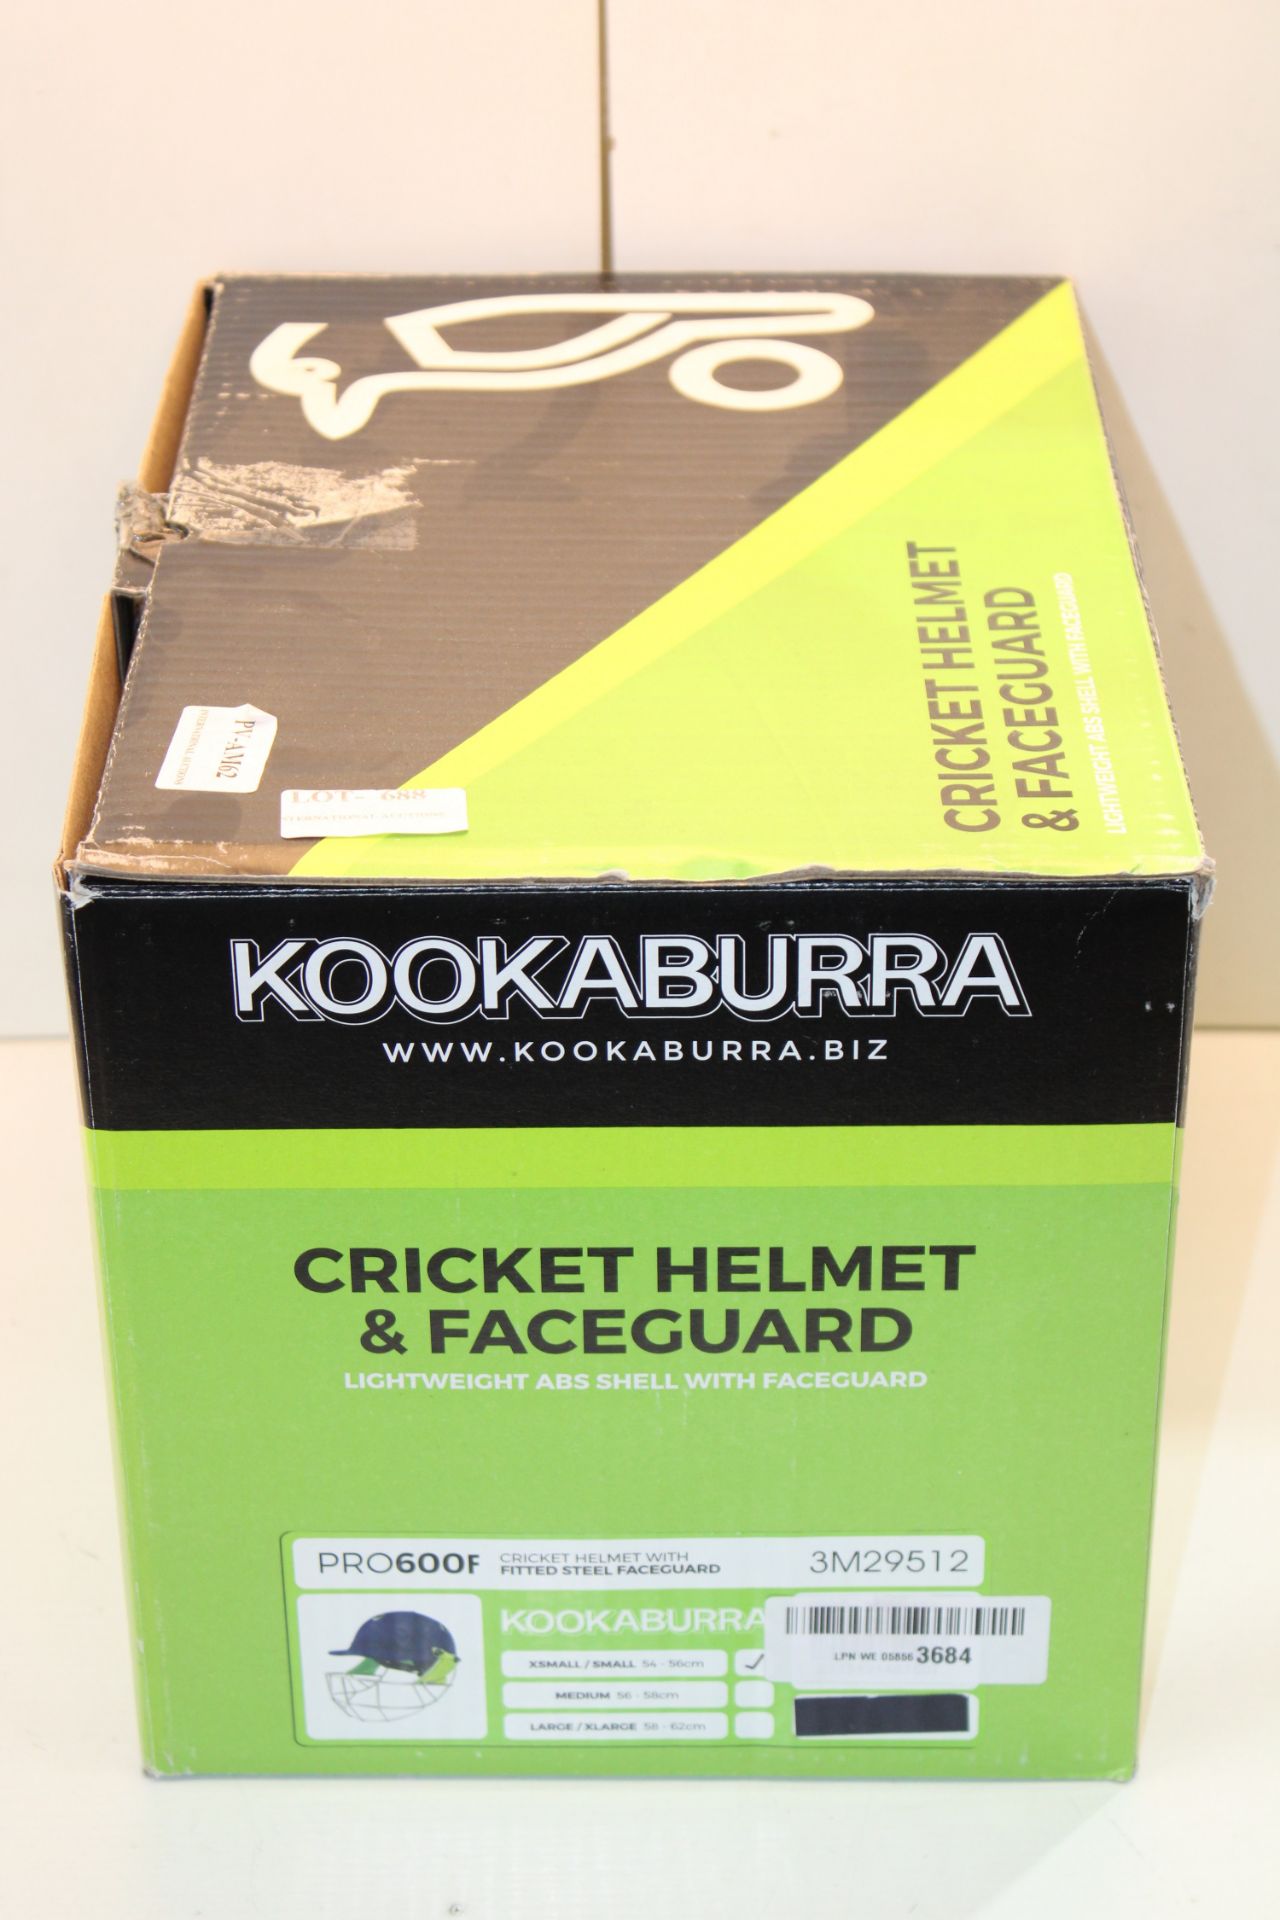 BOXED KOOKABURRA CRICKET HELMET & FACEGUARD PRO600F MODEL: 3M29512 SIZE MEDIUM RRP £49.00Condition